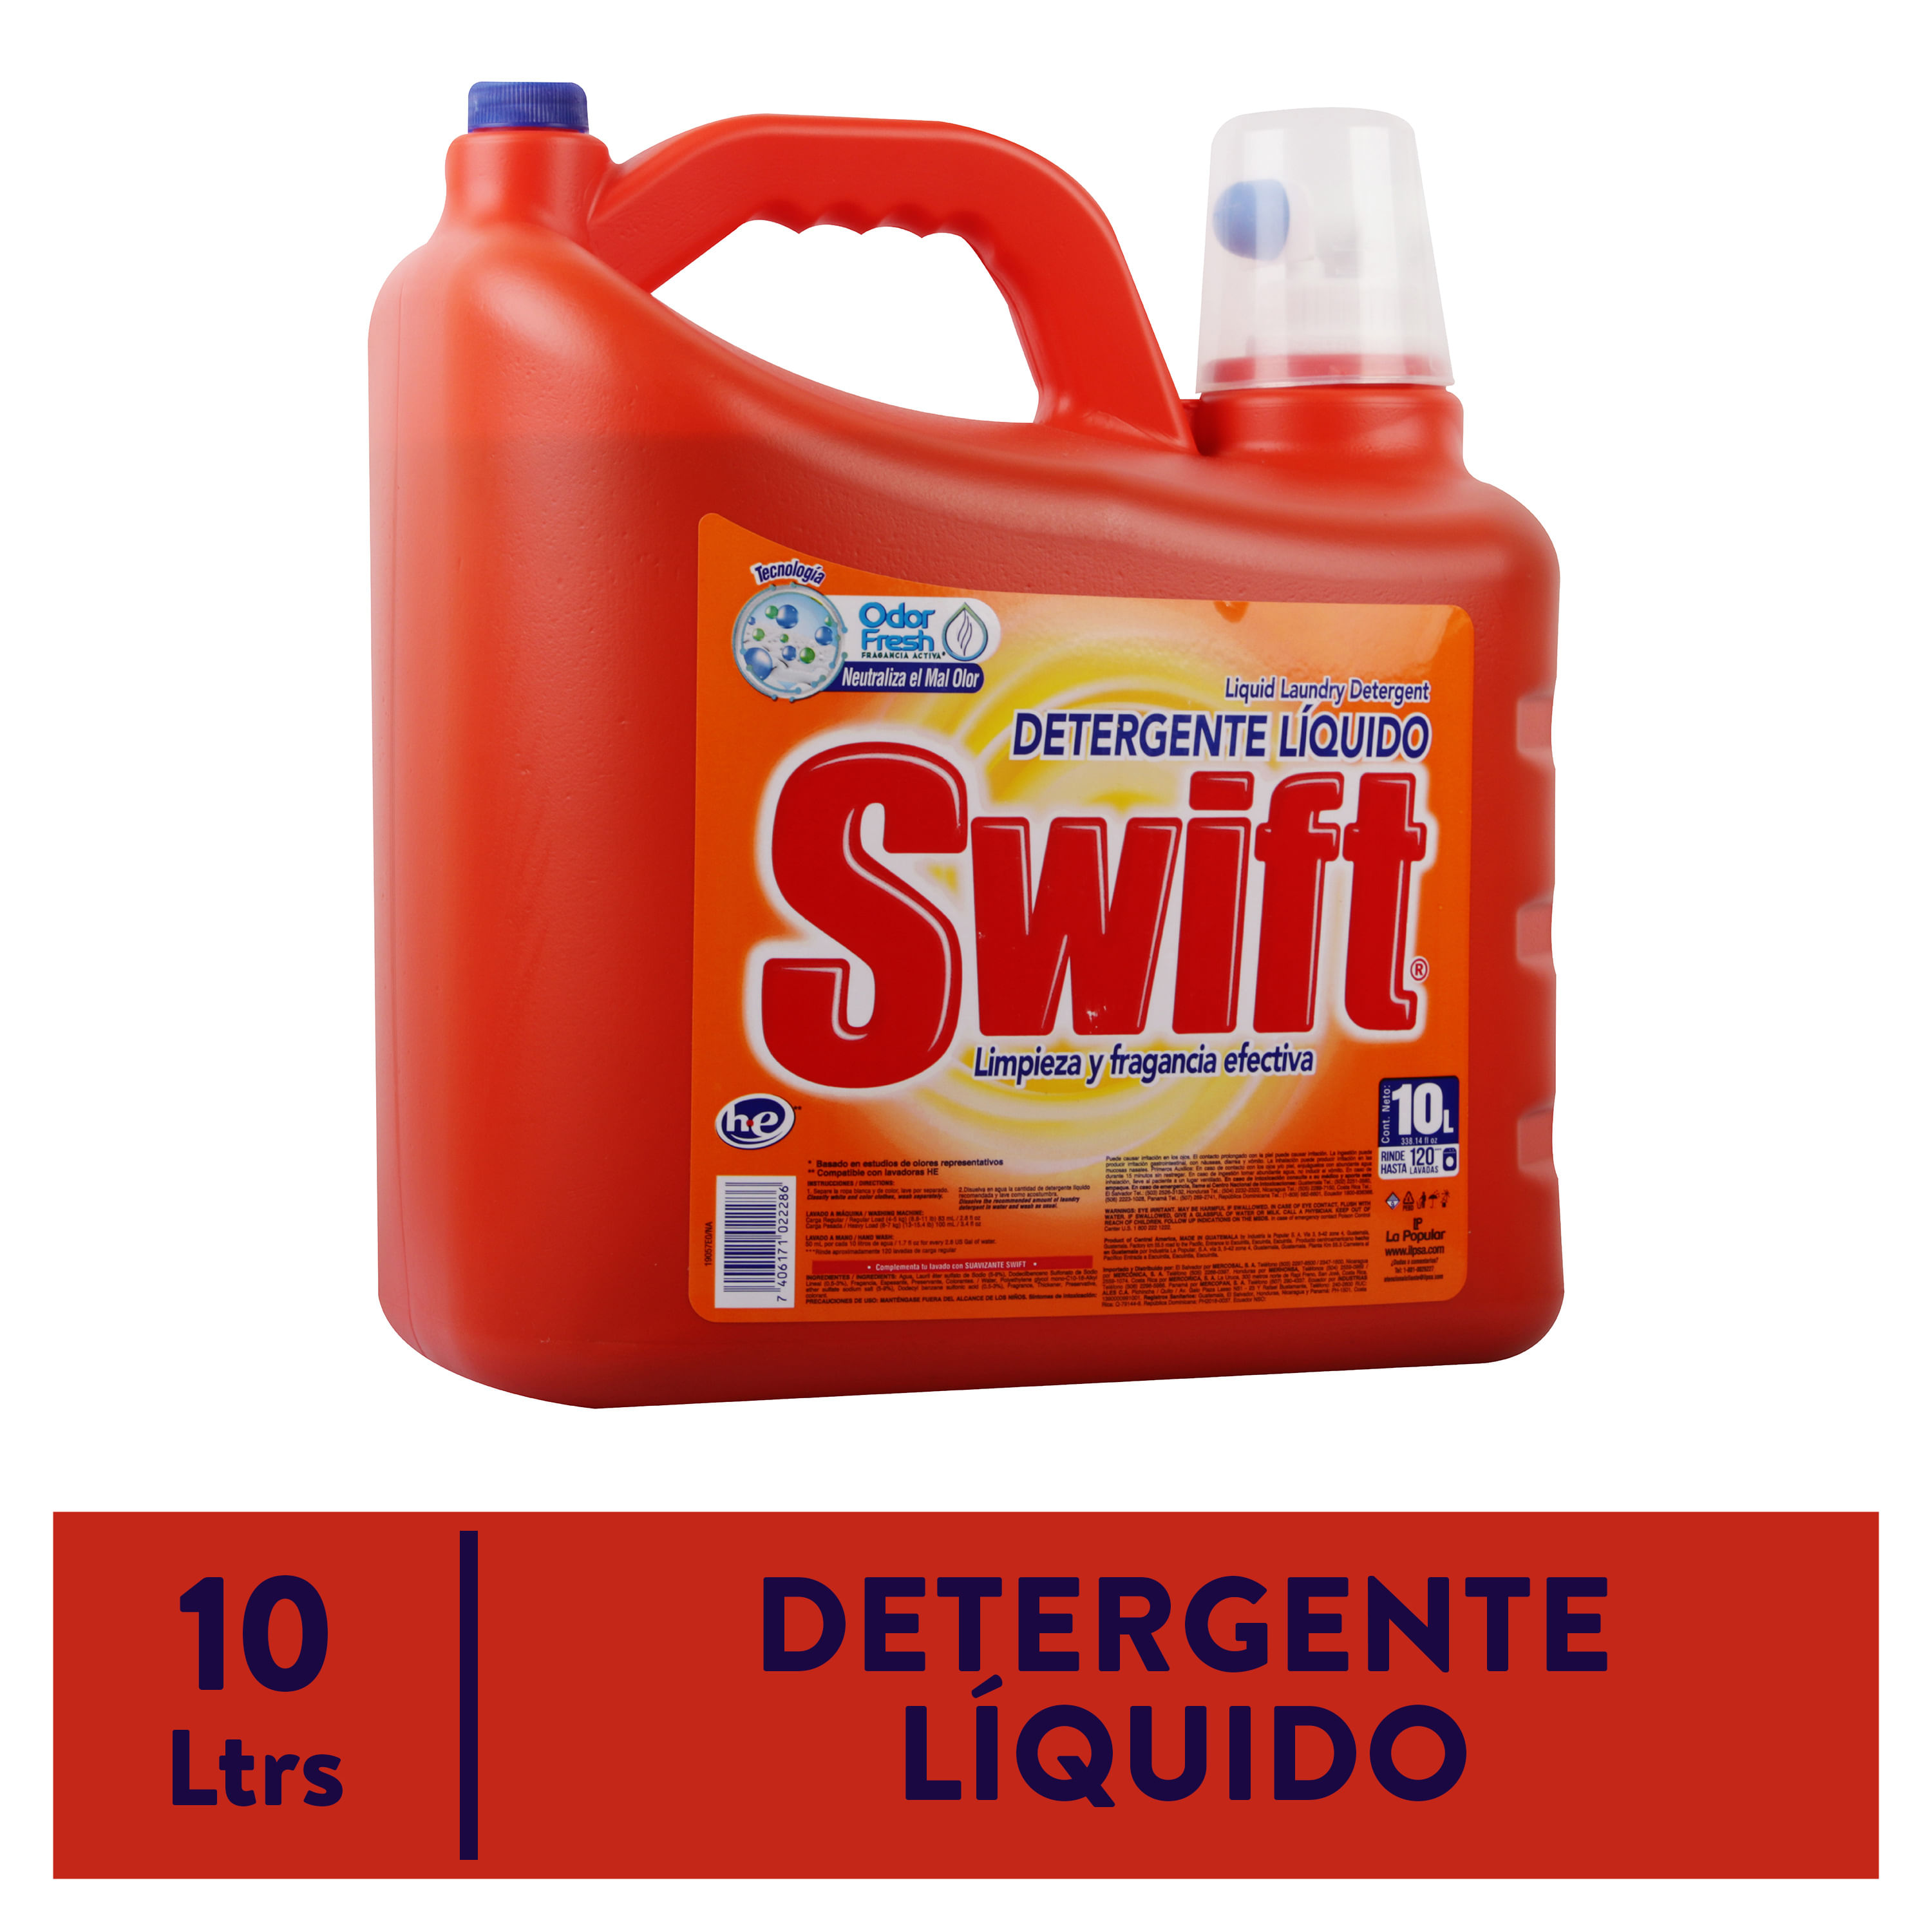 Detergente-Liquido-Swift-10L-1-14671